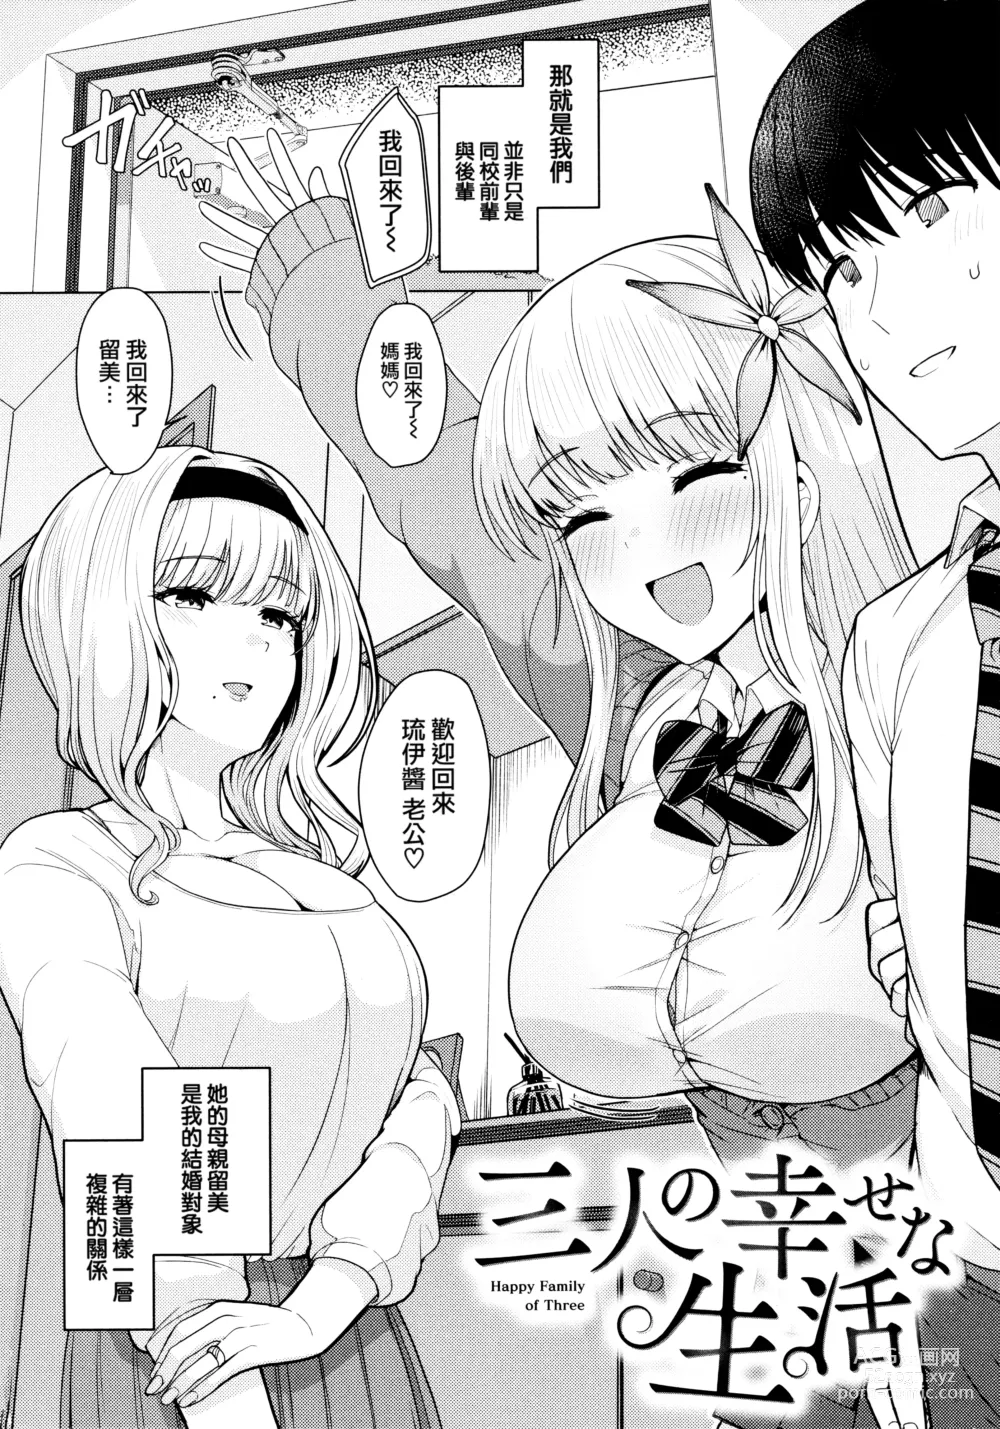 Page 6 of manga Nukunuku Seikatsu - Life Full of Sex + Melonbooks Kounyu Tokuten + Toranoana Kounyu Tokuten